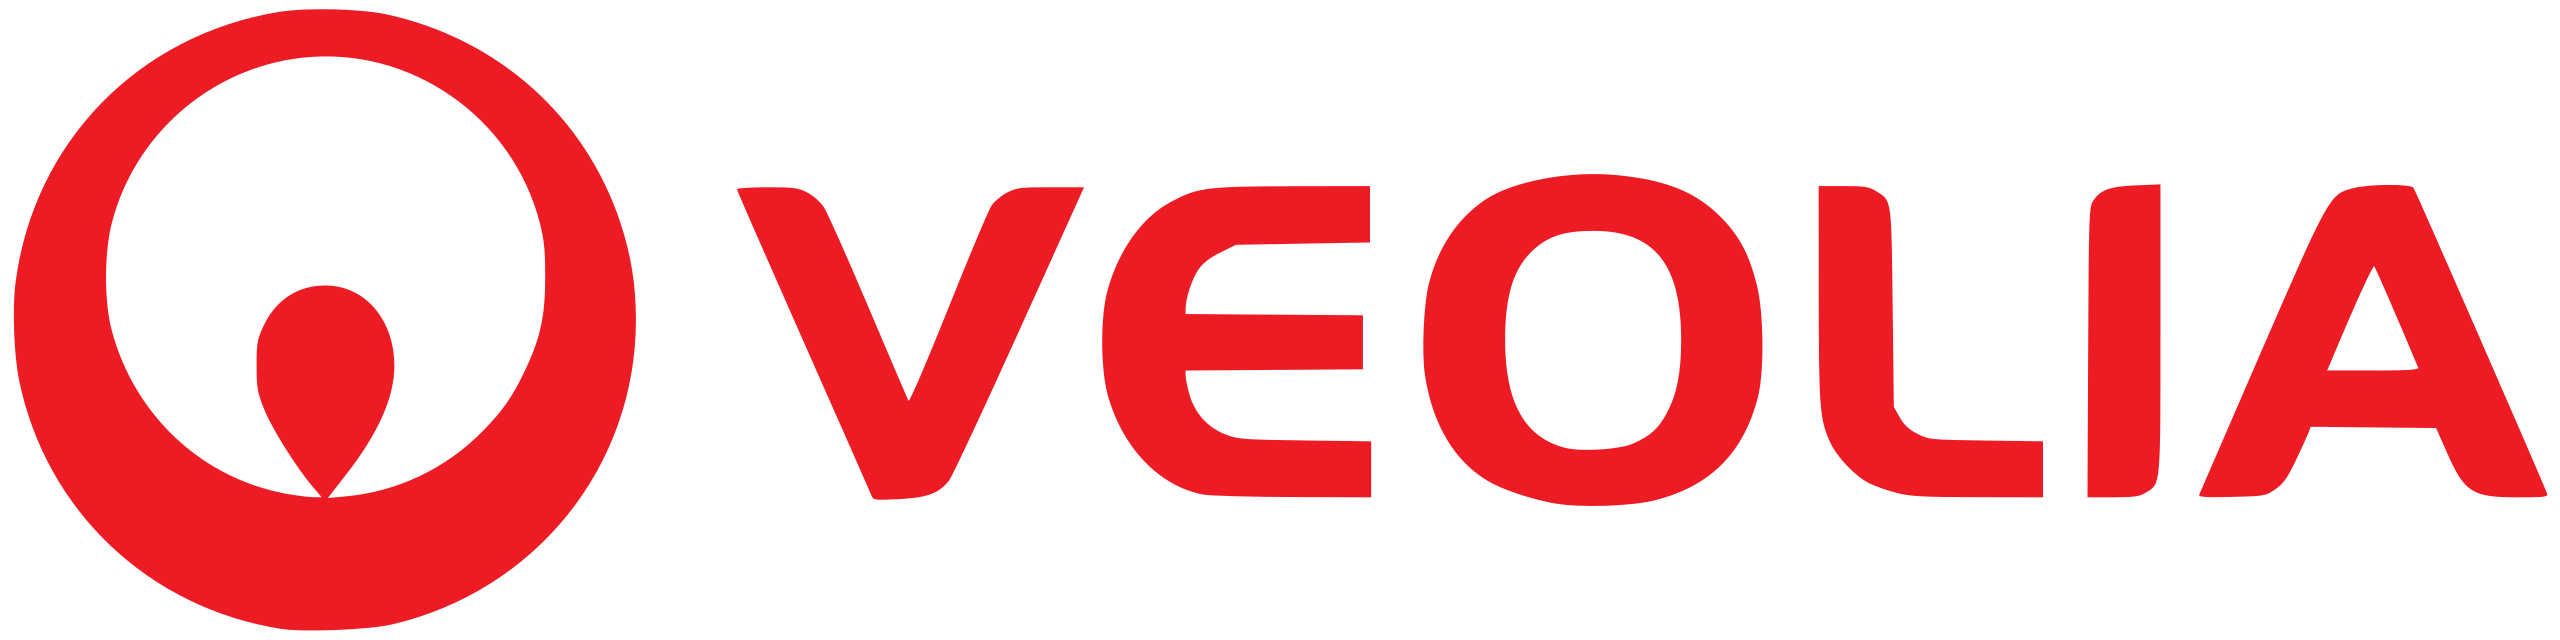 2560px-Veolia_logo_svg